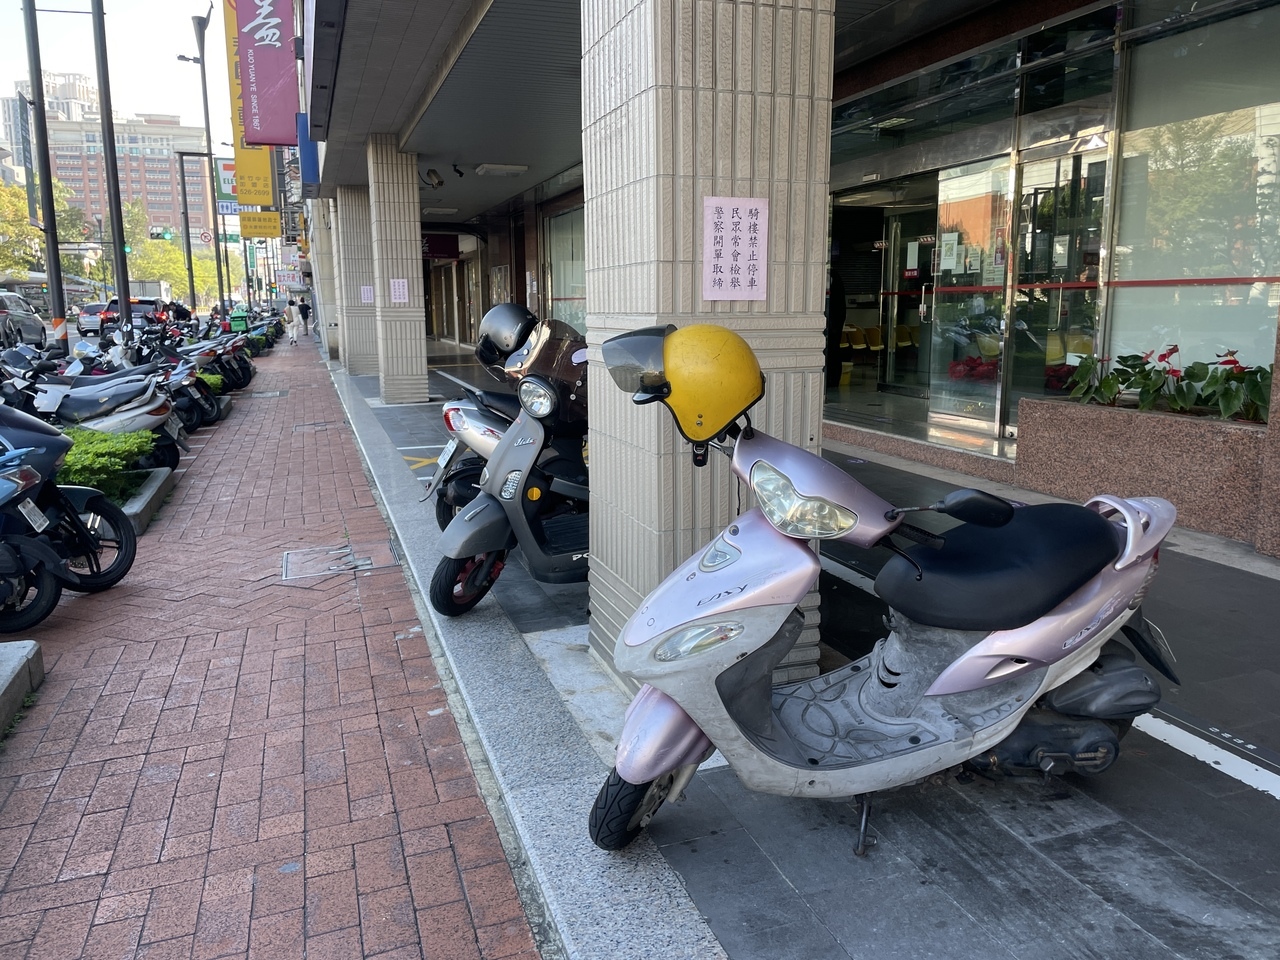 新竹市騎樓違停狀況屢見不鮮。記者張裕珍／攝影 